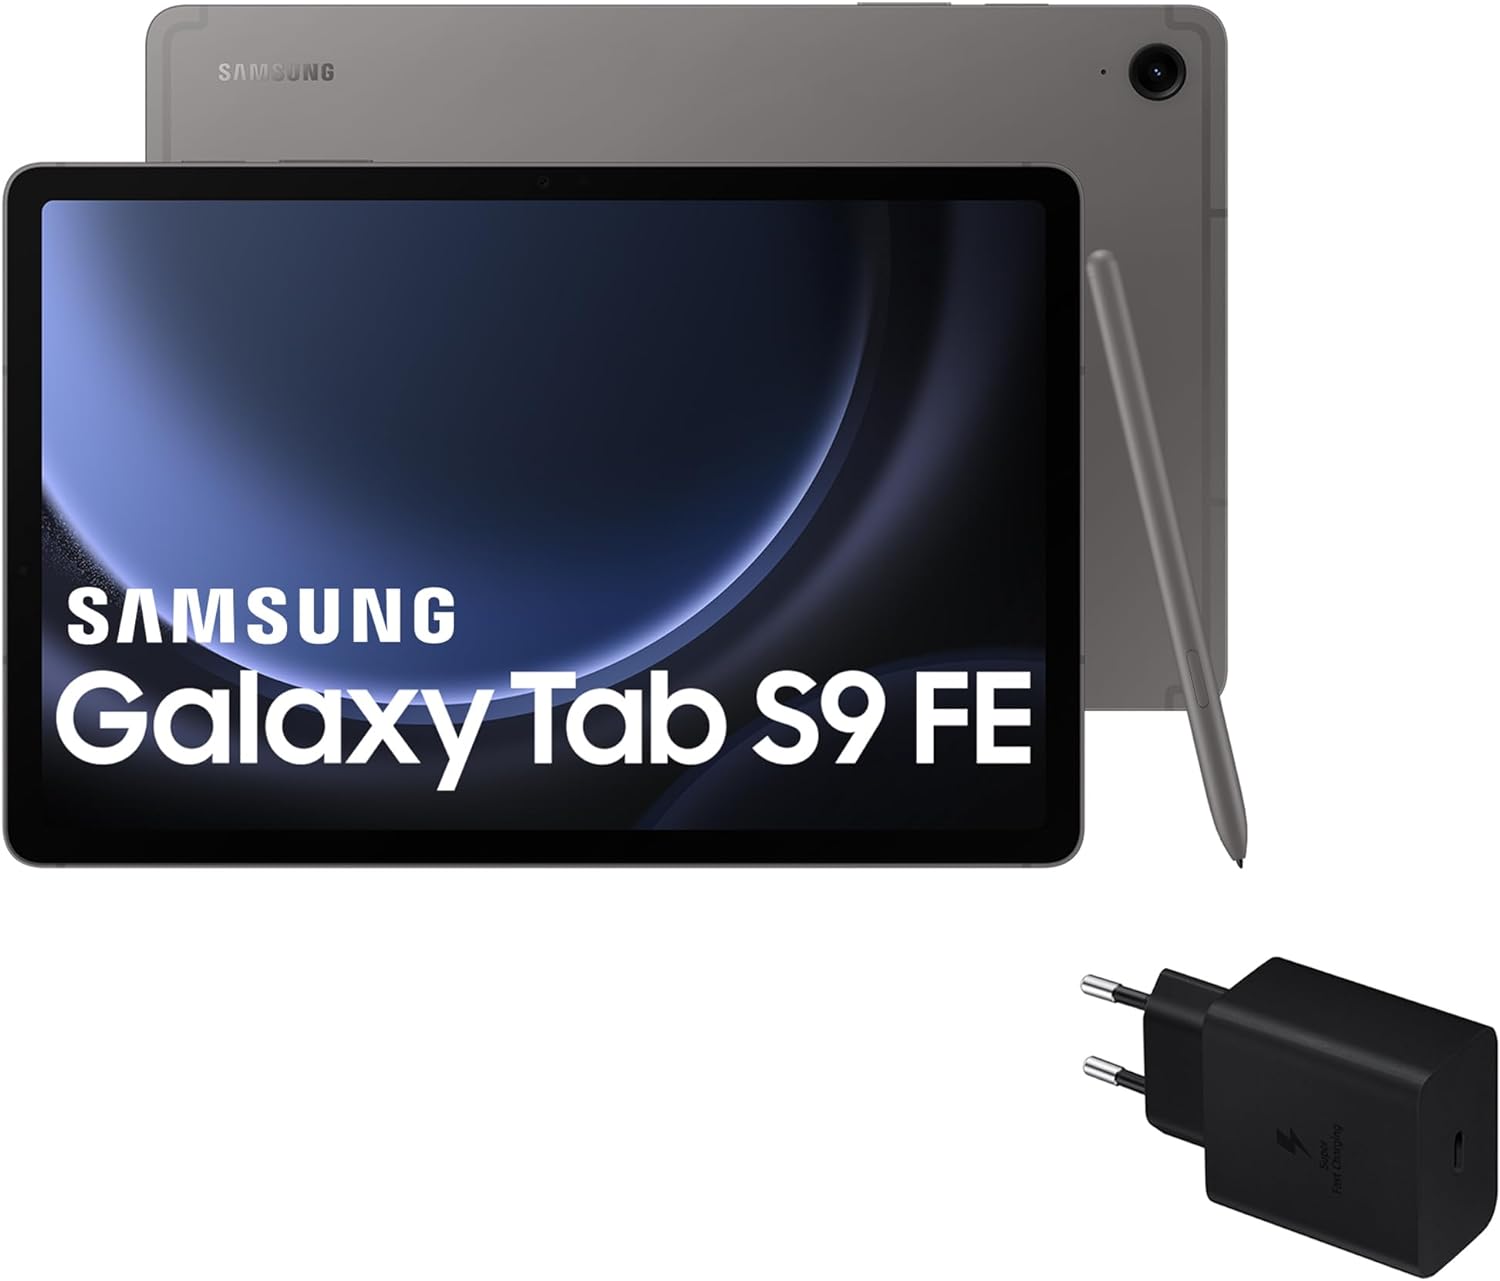 Samsung Galaxy Tab S9 FE vs. Xiaomi Pad 6 vs. Lenovo Tab P12